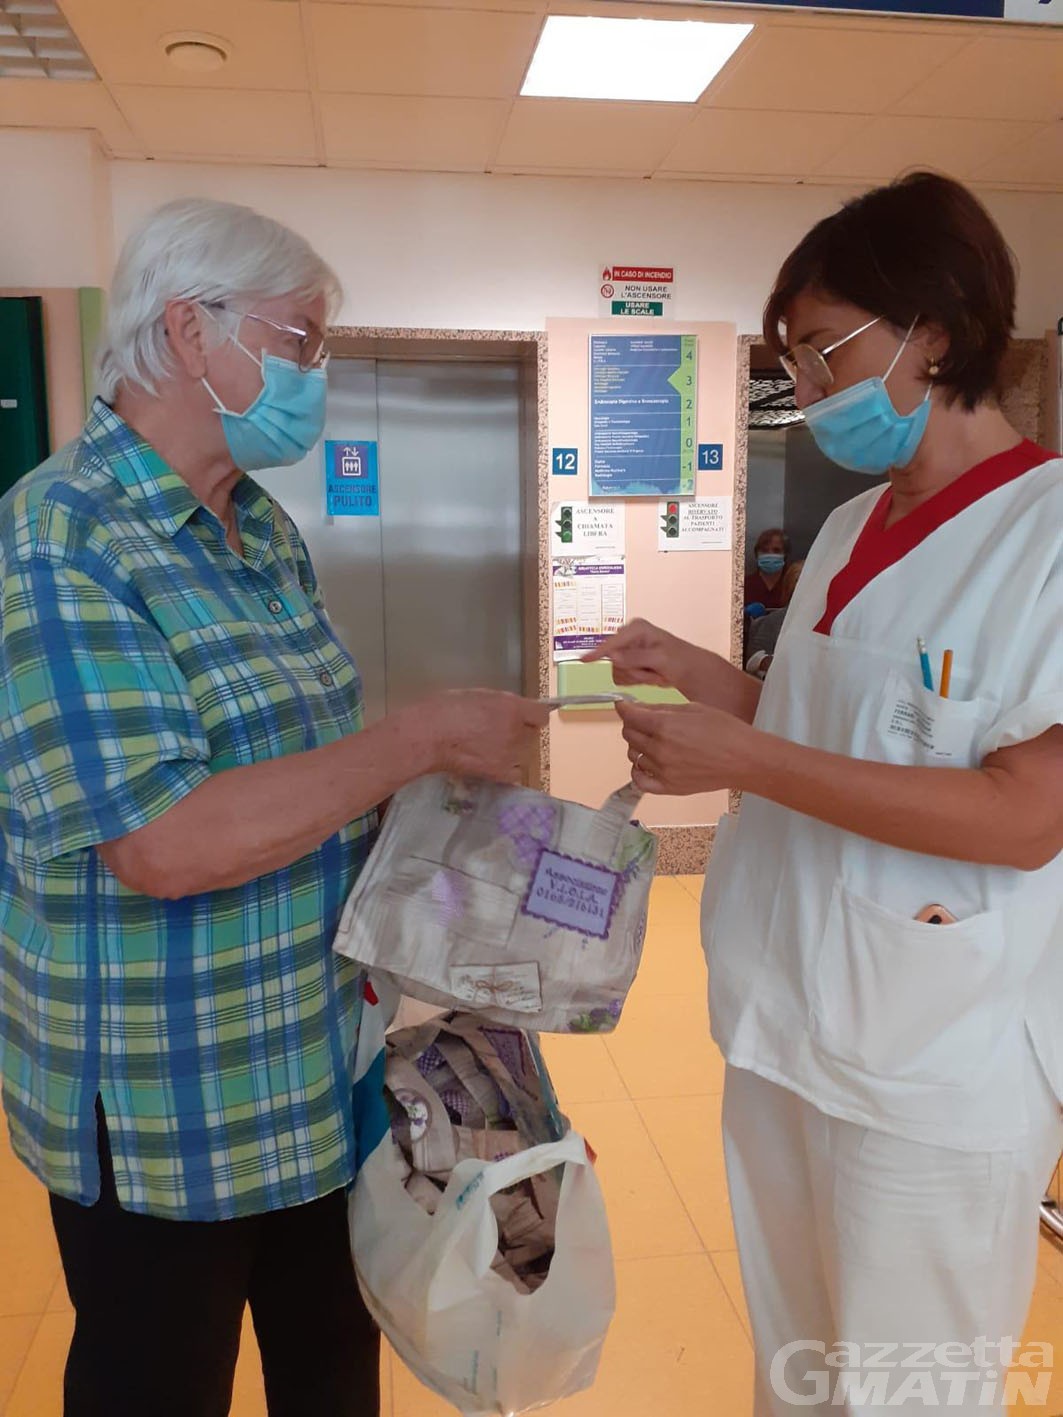 Solidarietà: Viola dona borsine al reparto di chirurgia toracica del Parini